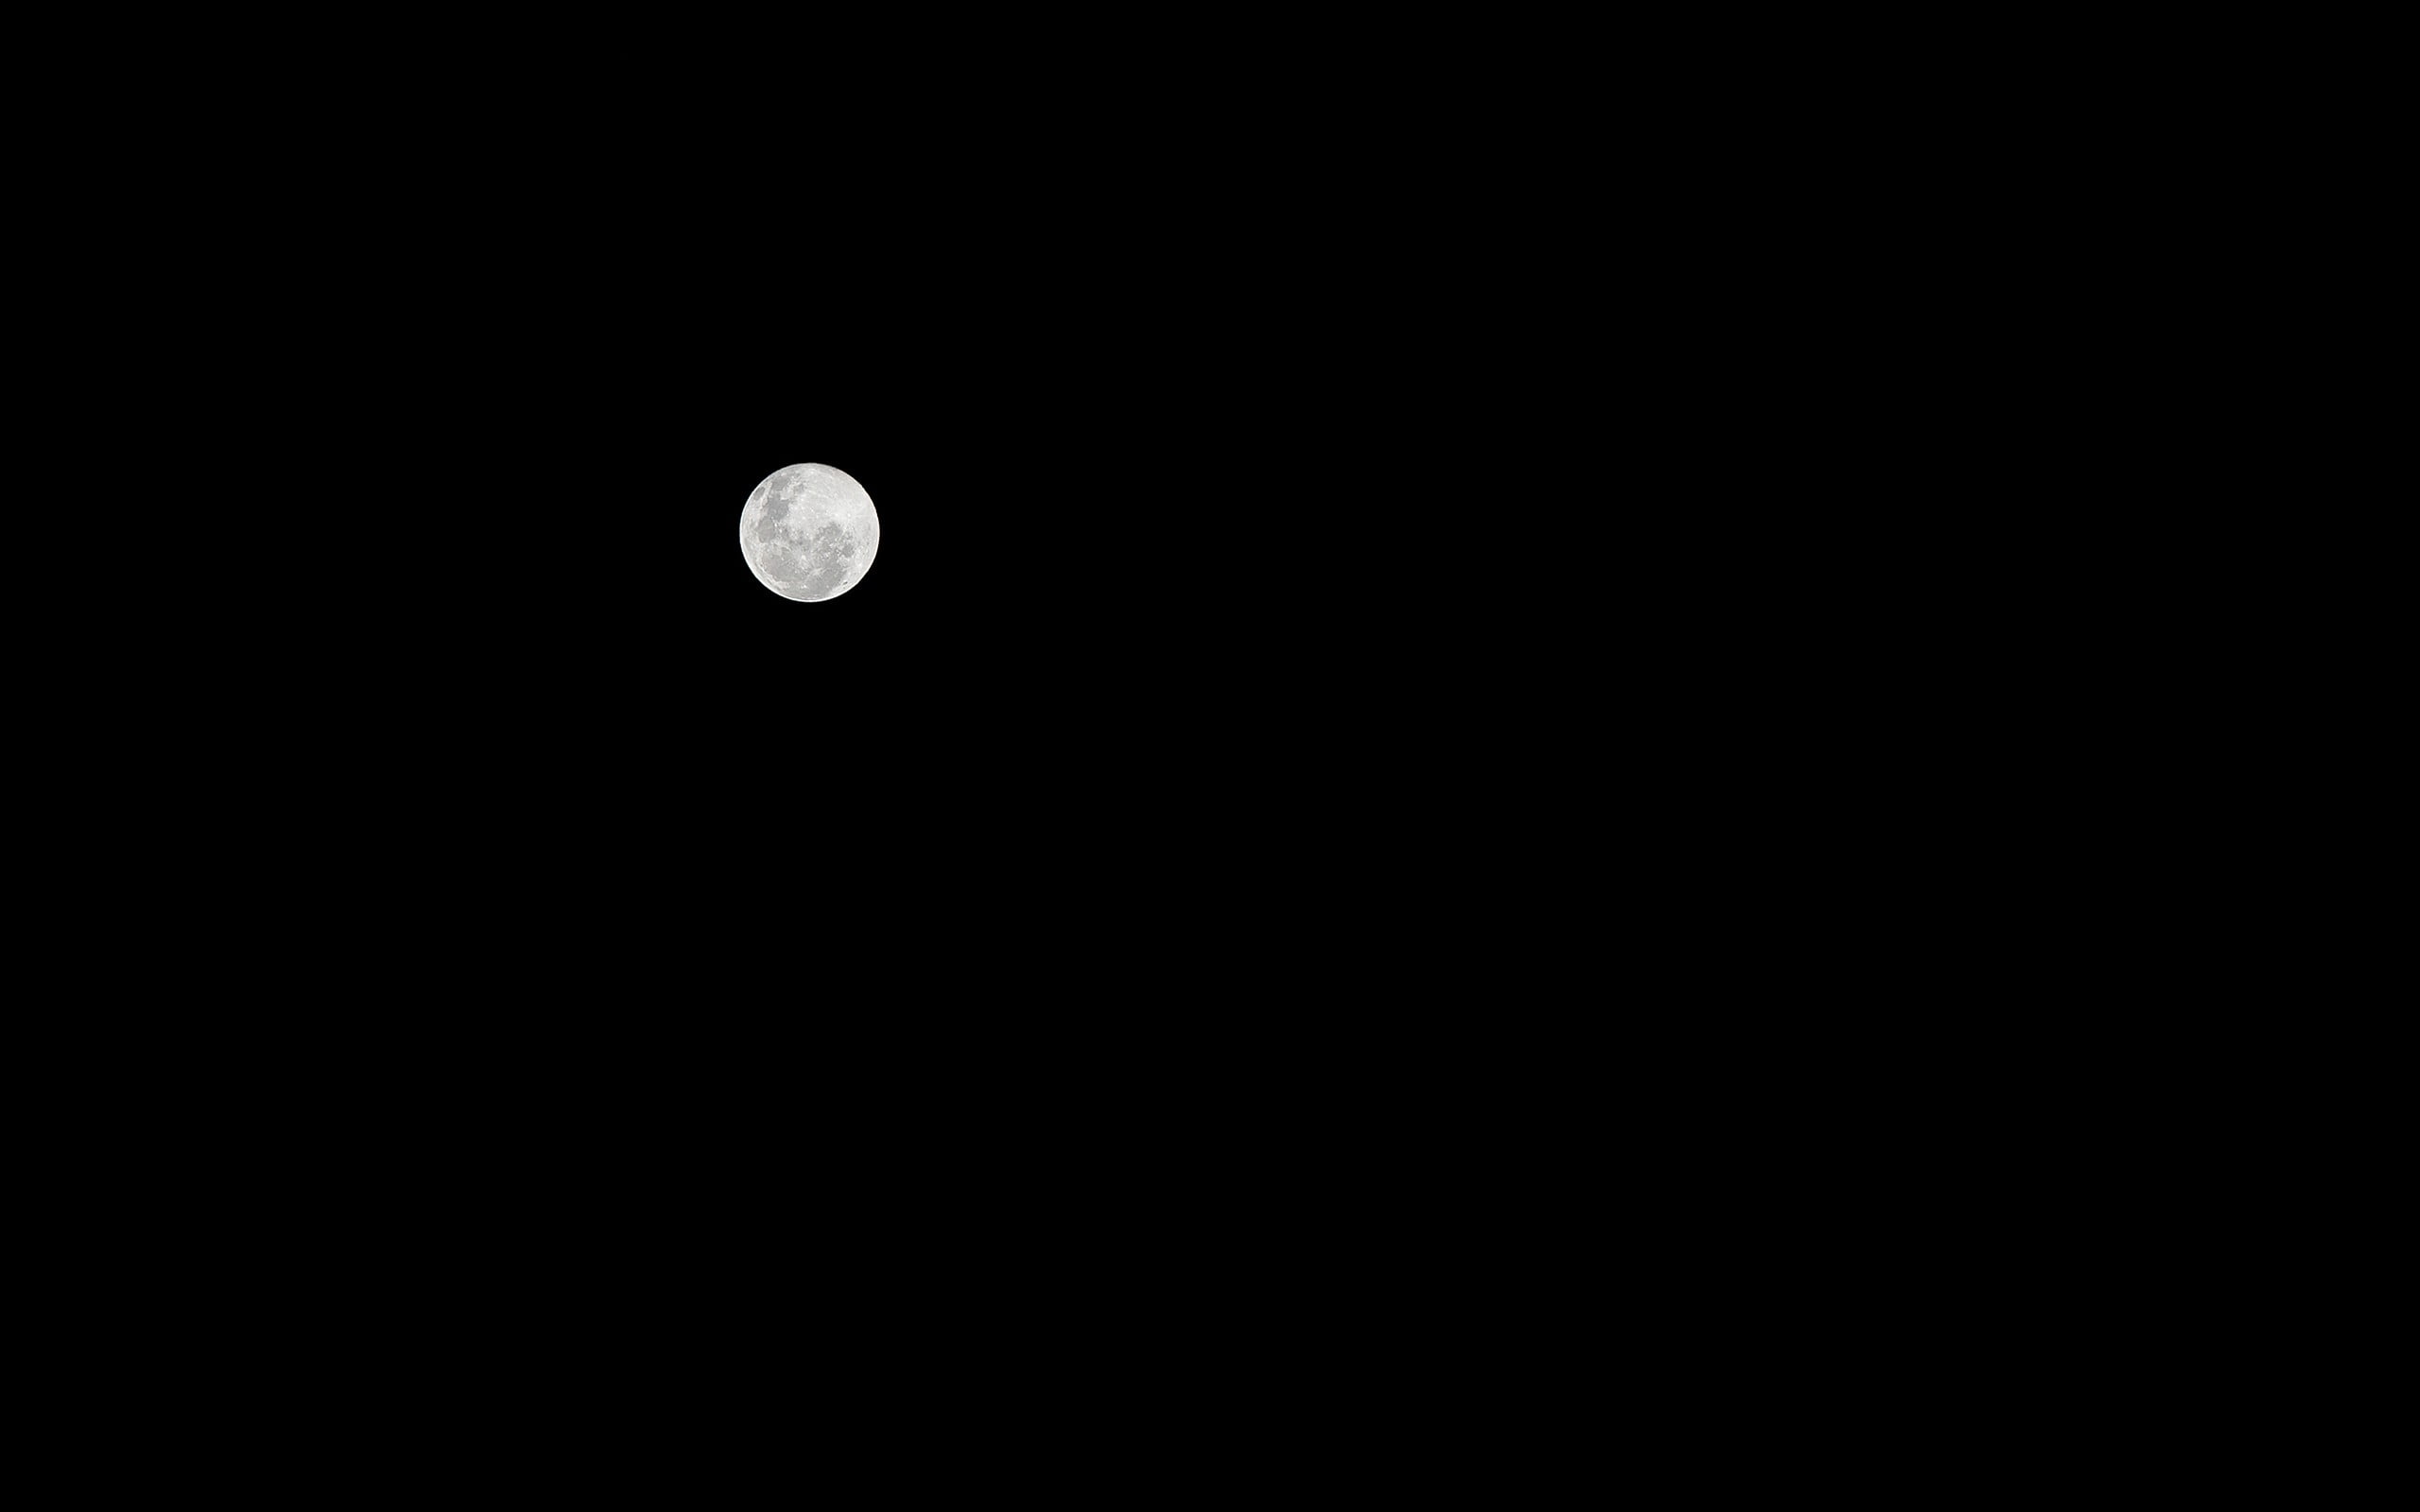 2560x1600 Máy tính xách tay HP đen trắng, Mặt trăng, Chủ nghĩa tối giản, Hình nền HD về đêm